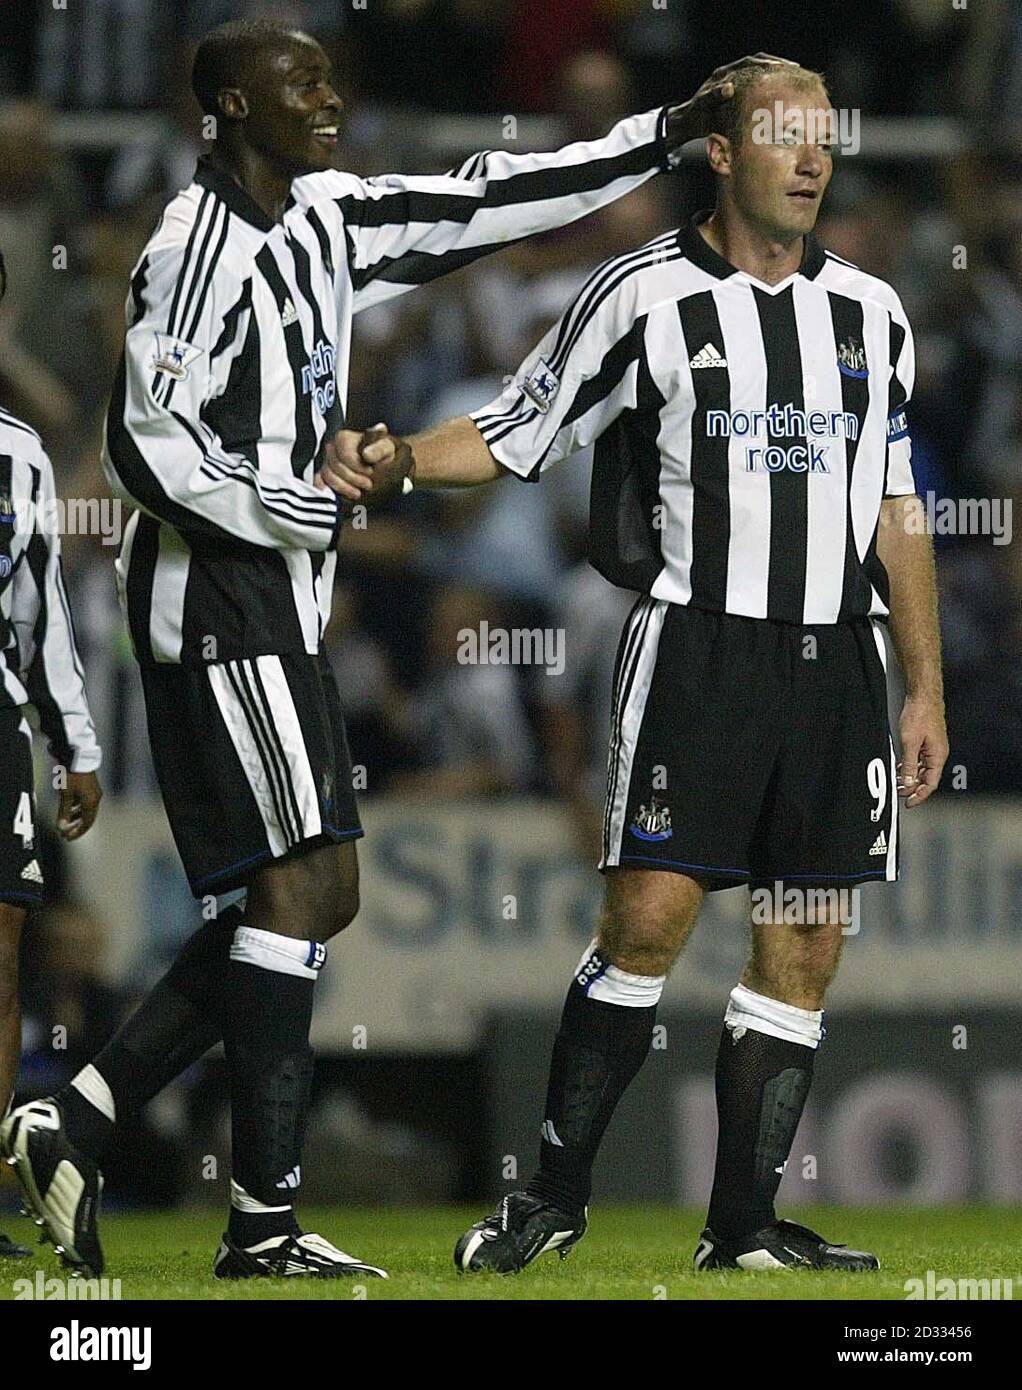 Newcastles Alan Shearer wird von Teamkollege Shola Ameobi konkratuliert, nachdem er am Dienstag, den 5. August 2003, im St. James' Park in Newcastle seinen zweiten Platz gegen Bayern München erzielt hatte. Stockfoto